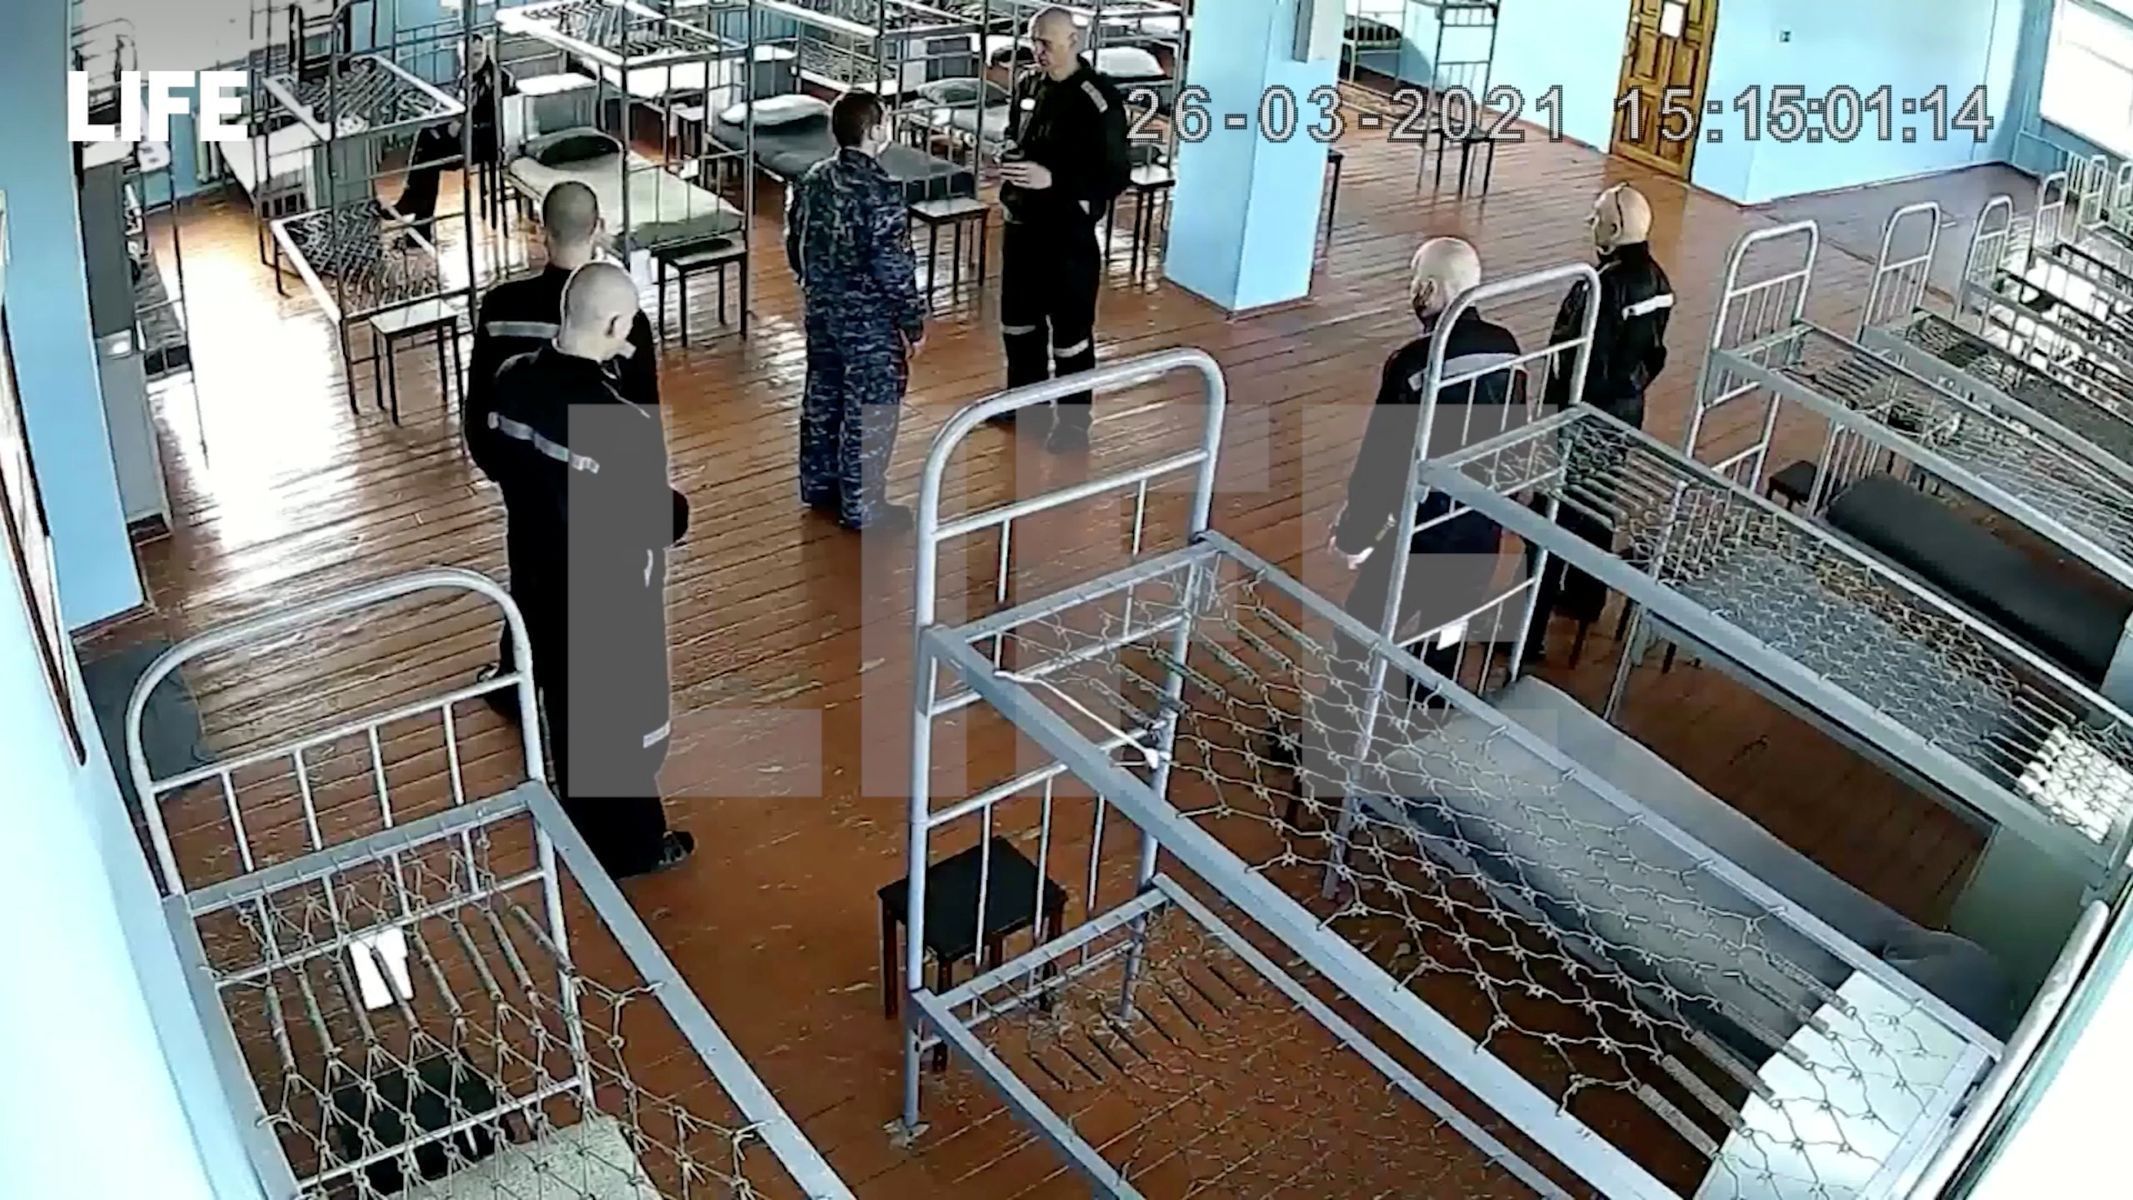 Fotografie z průmyslové kamery Pokrovské věznice, na které je vidět Alexej Navalnyj (v rozhovoru s mužem v uniformě).